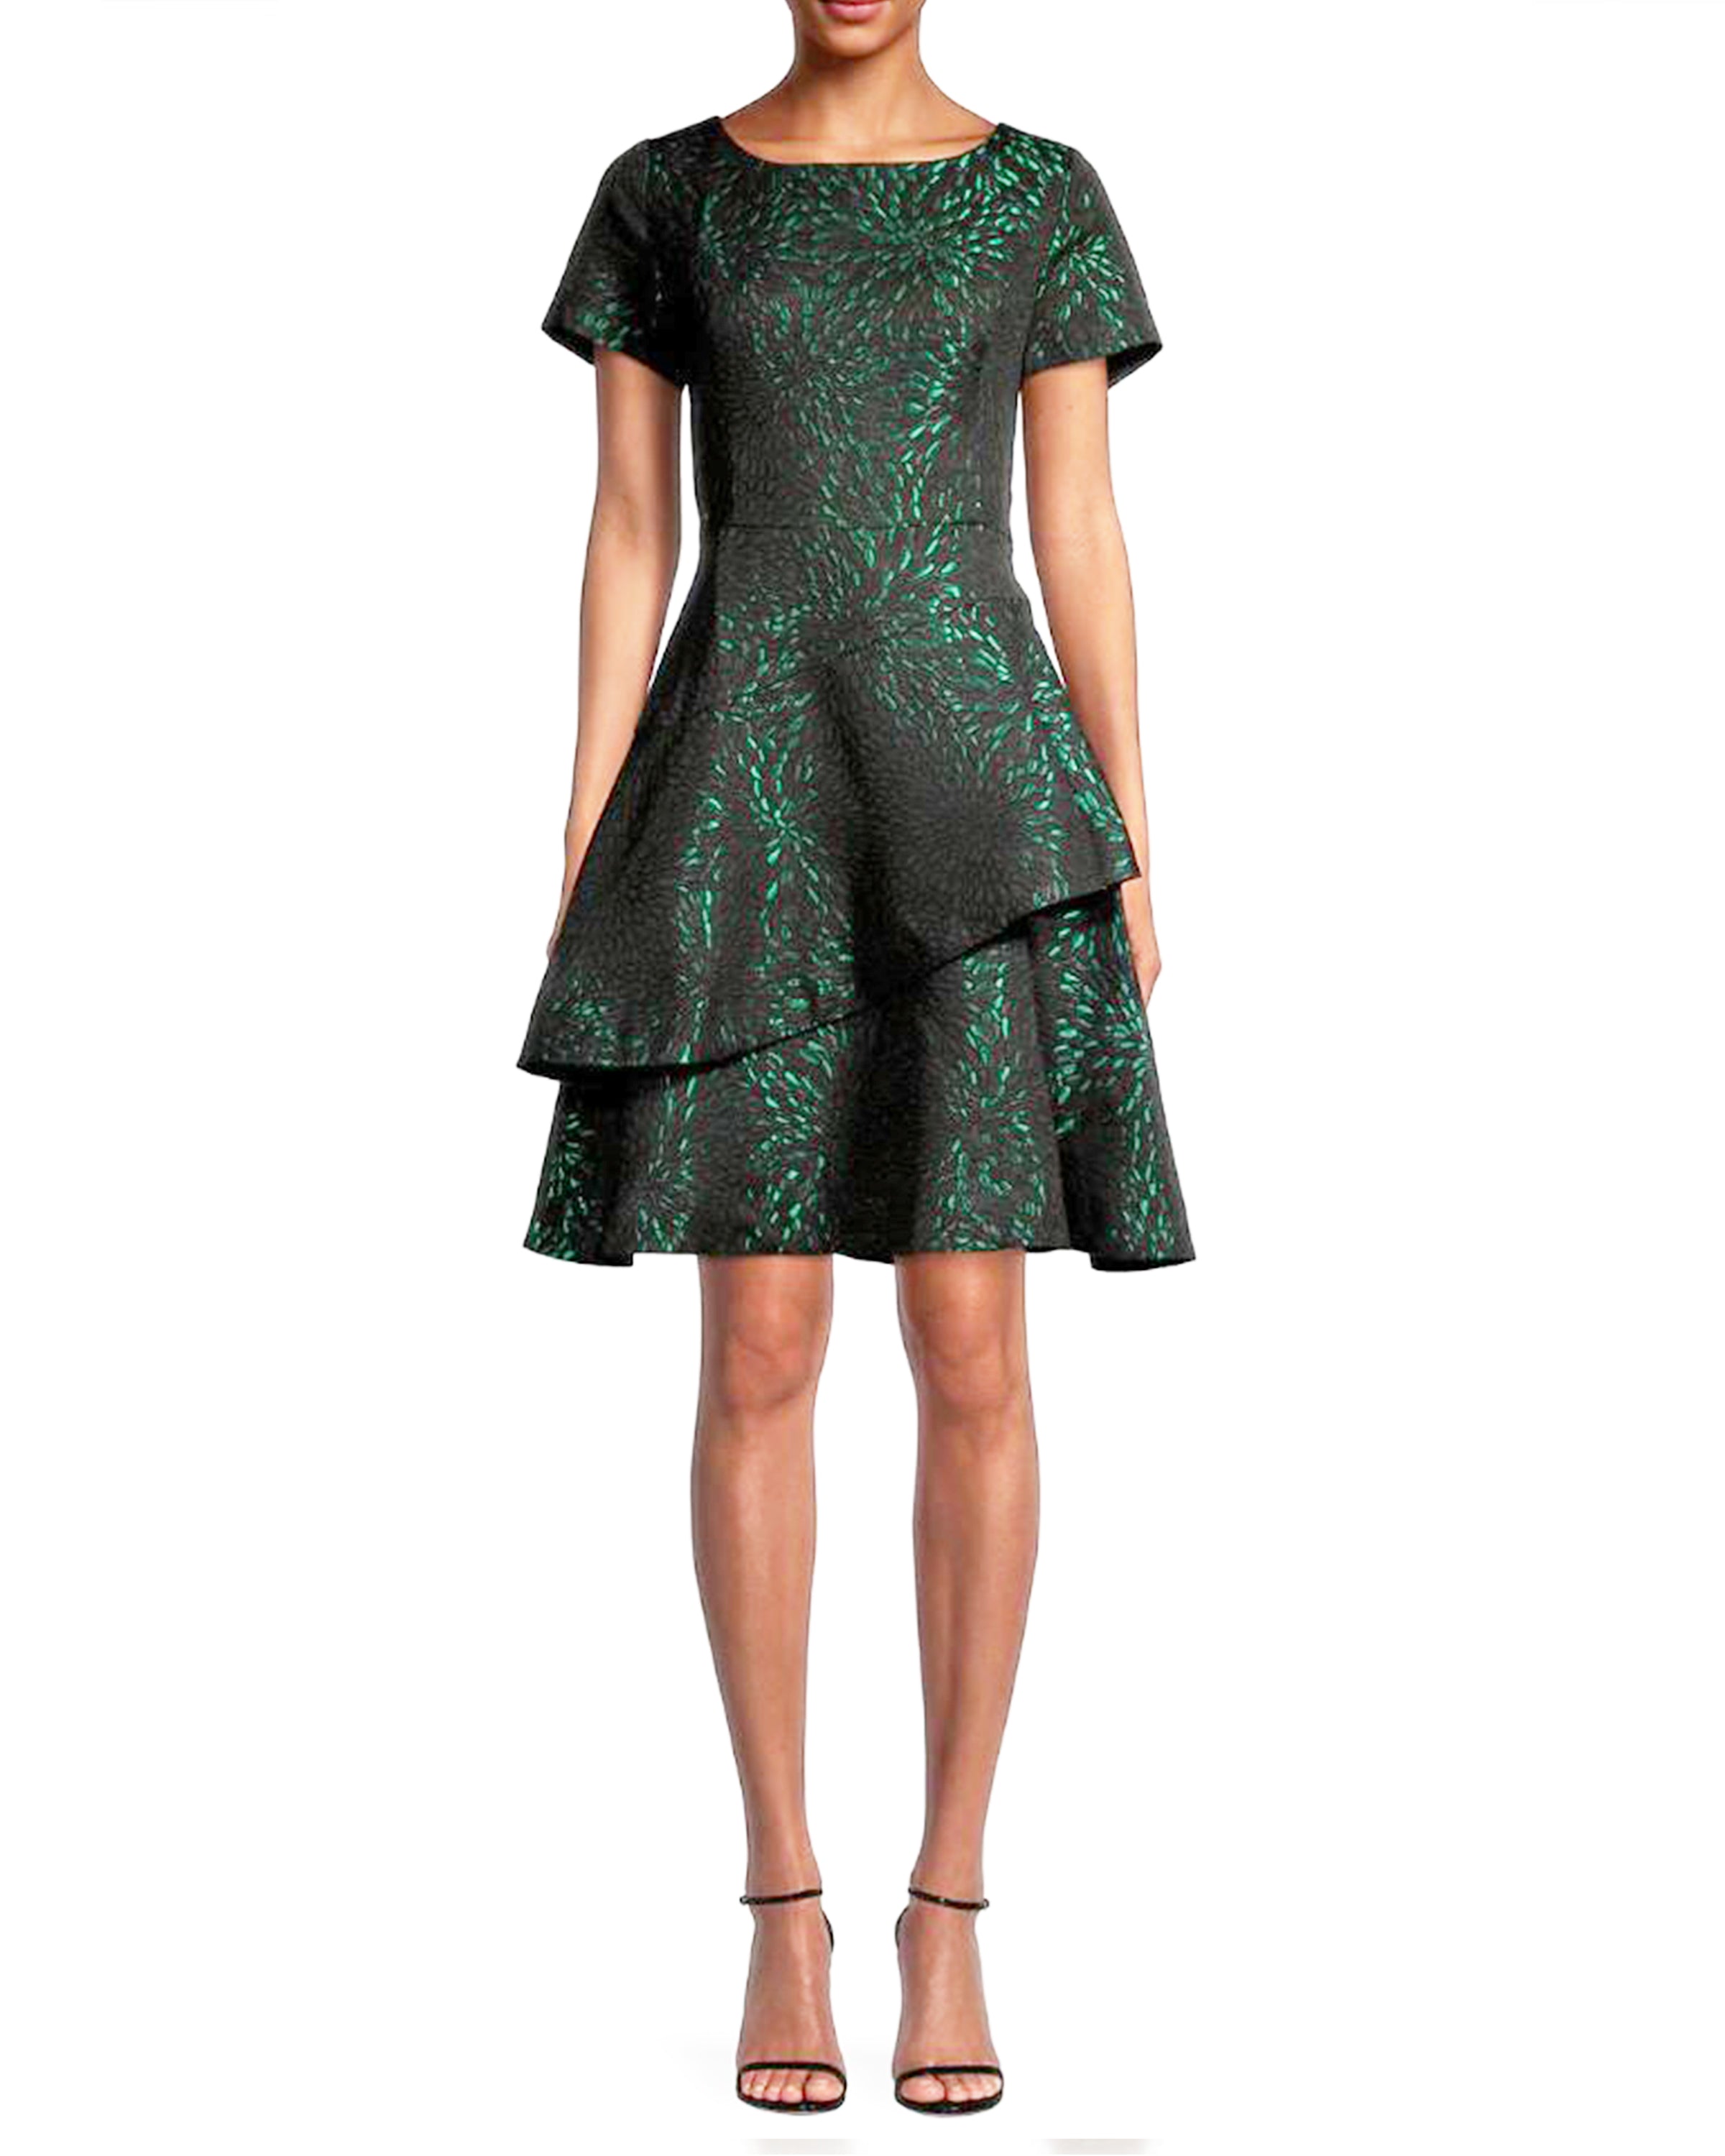 Green Asymmetrical Jacquard Dress